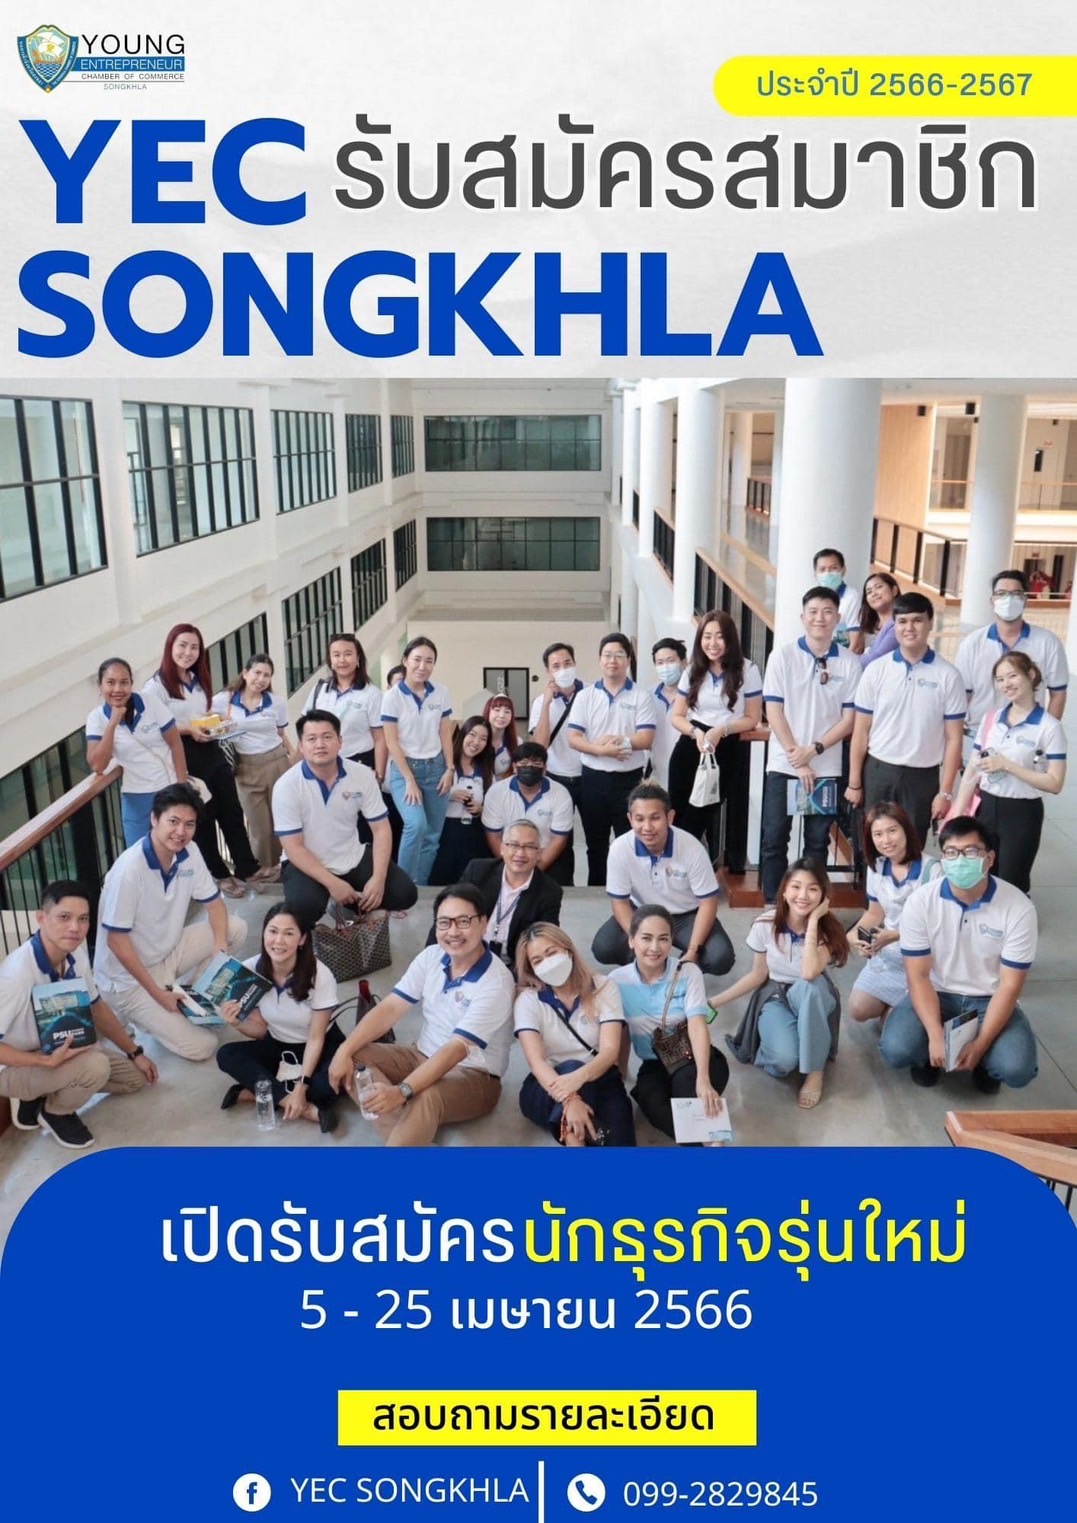 ขอเชิญชวน ผู้ประกอบการรุ่นใหม่ มาร่วมเป็นส่วนหนึ่งของ YEC Songkhla เพื่อพัฒนาเศรษฐกิจและสังคมในจังหวัดสงขลา